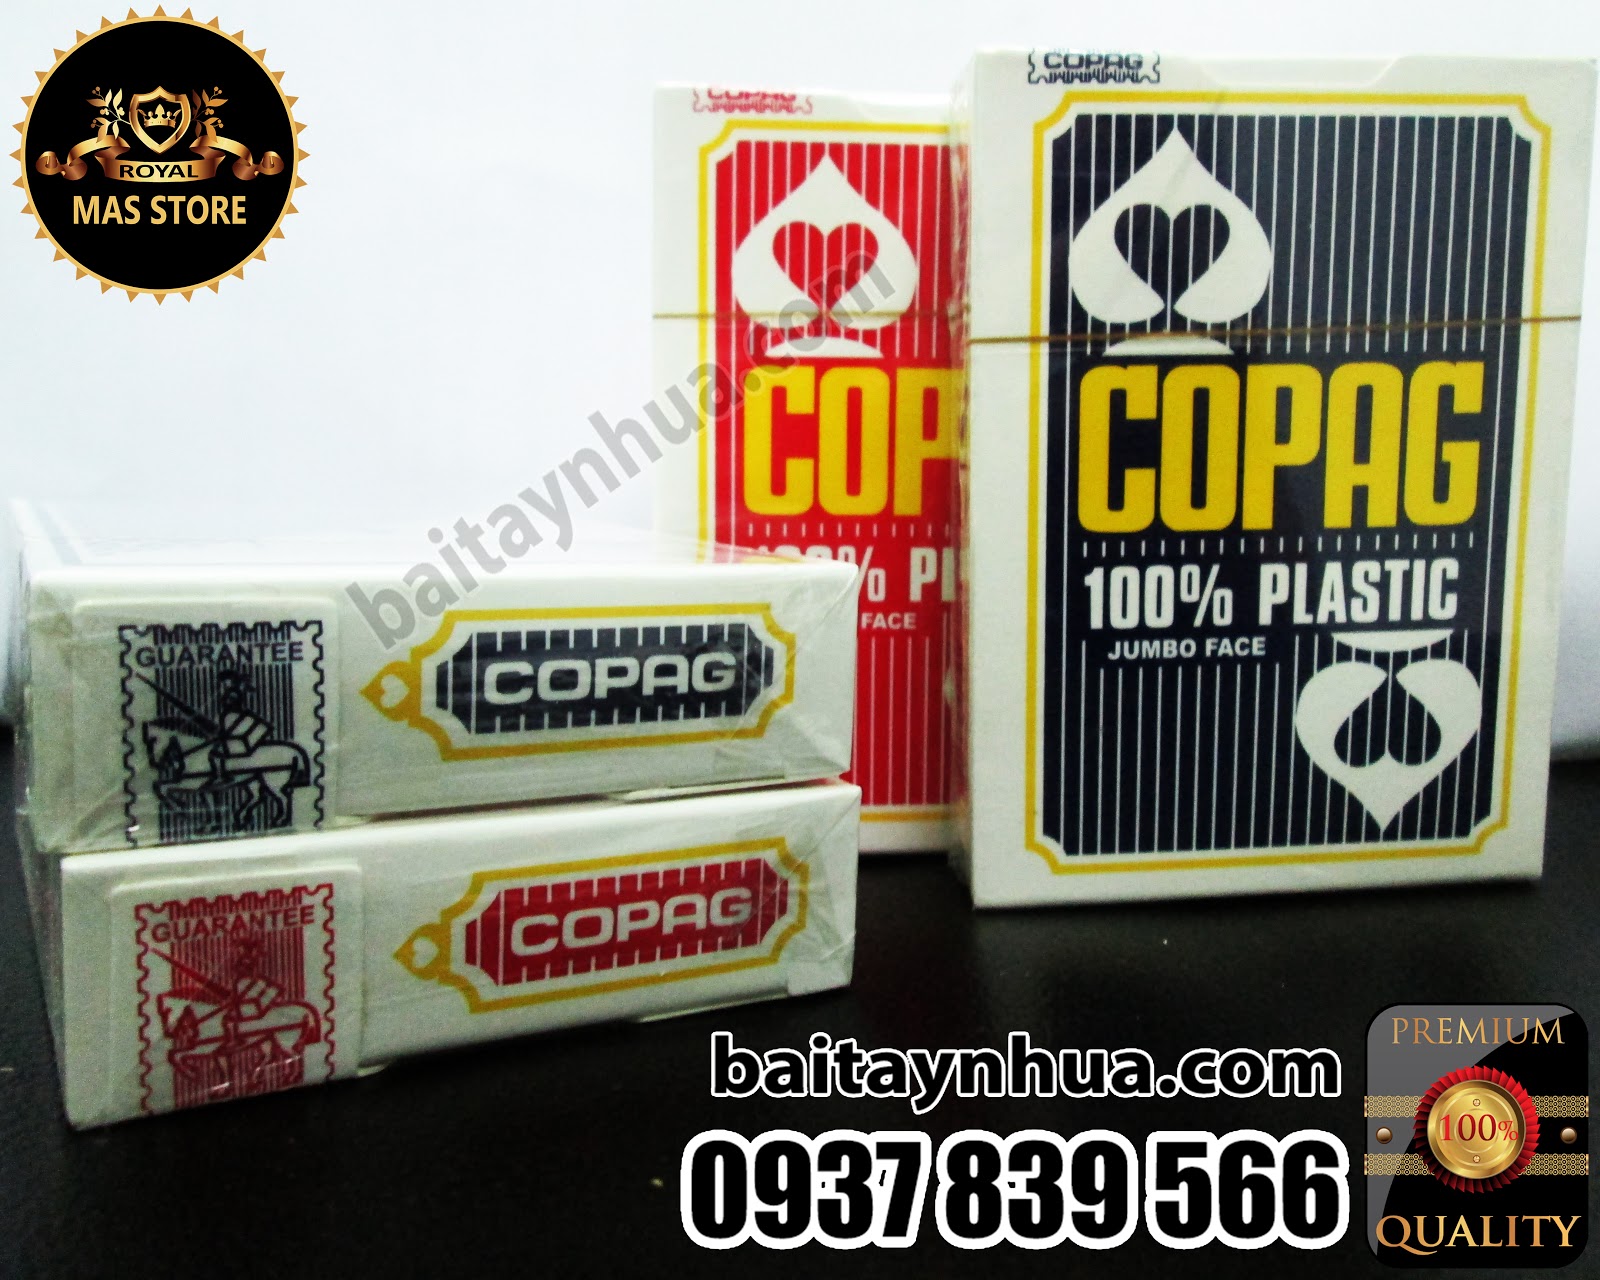 Bài Poker Stars COPAG Nhựa Cao Cấp Cực Tốt - 100% Plastic - Chuẩn casino quốc tế. - 3